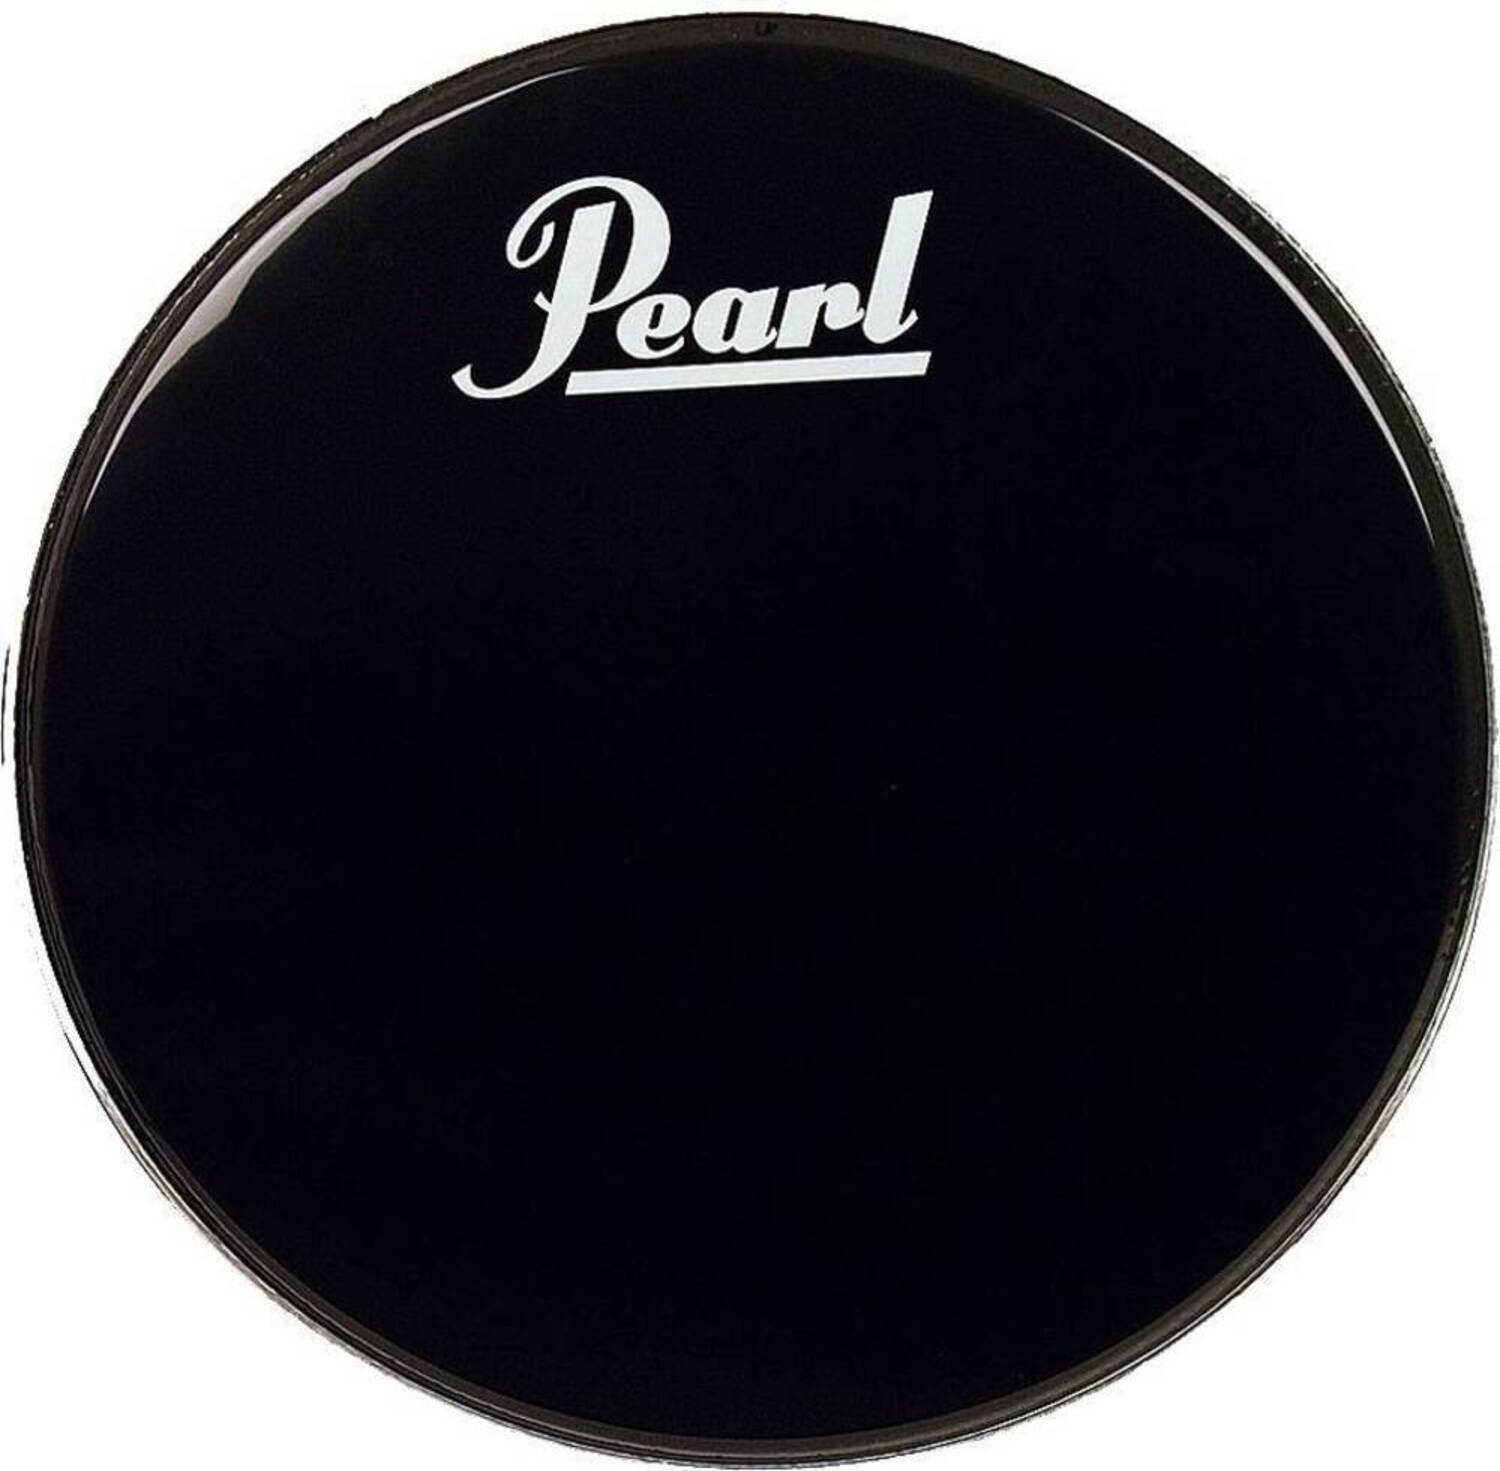 Прочие аксессуары для ударных инструментов Pearl EB-24BDPL стойки для ударных инструментов pearl b 1030